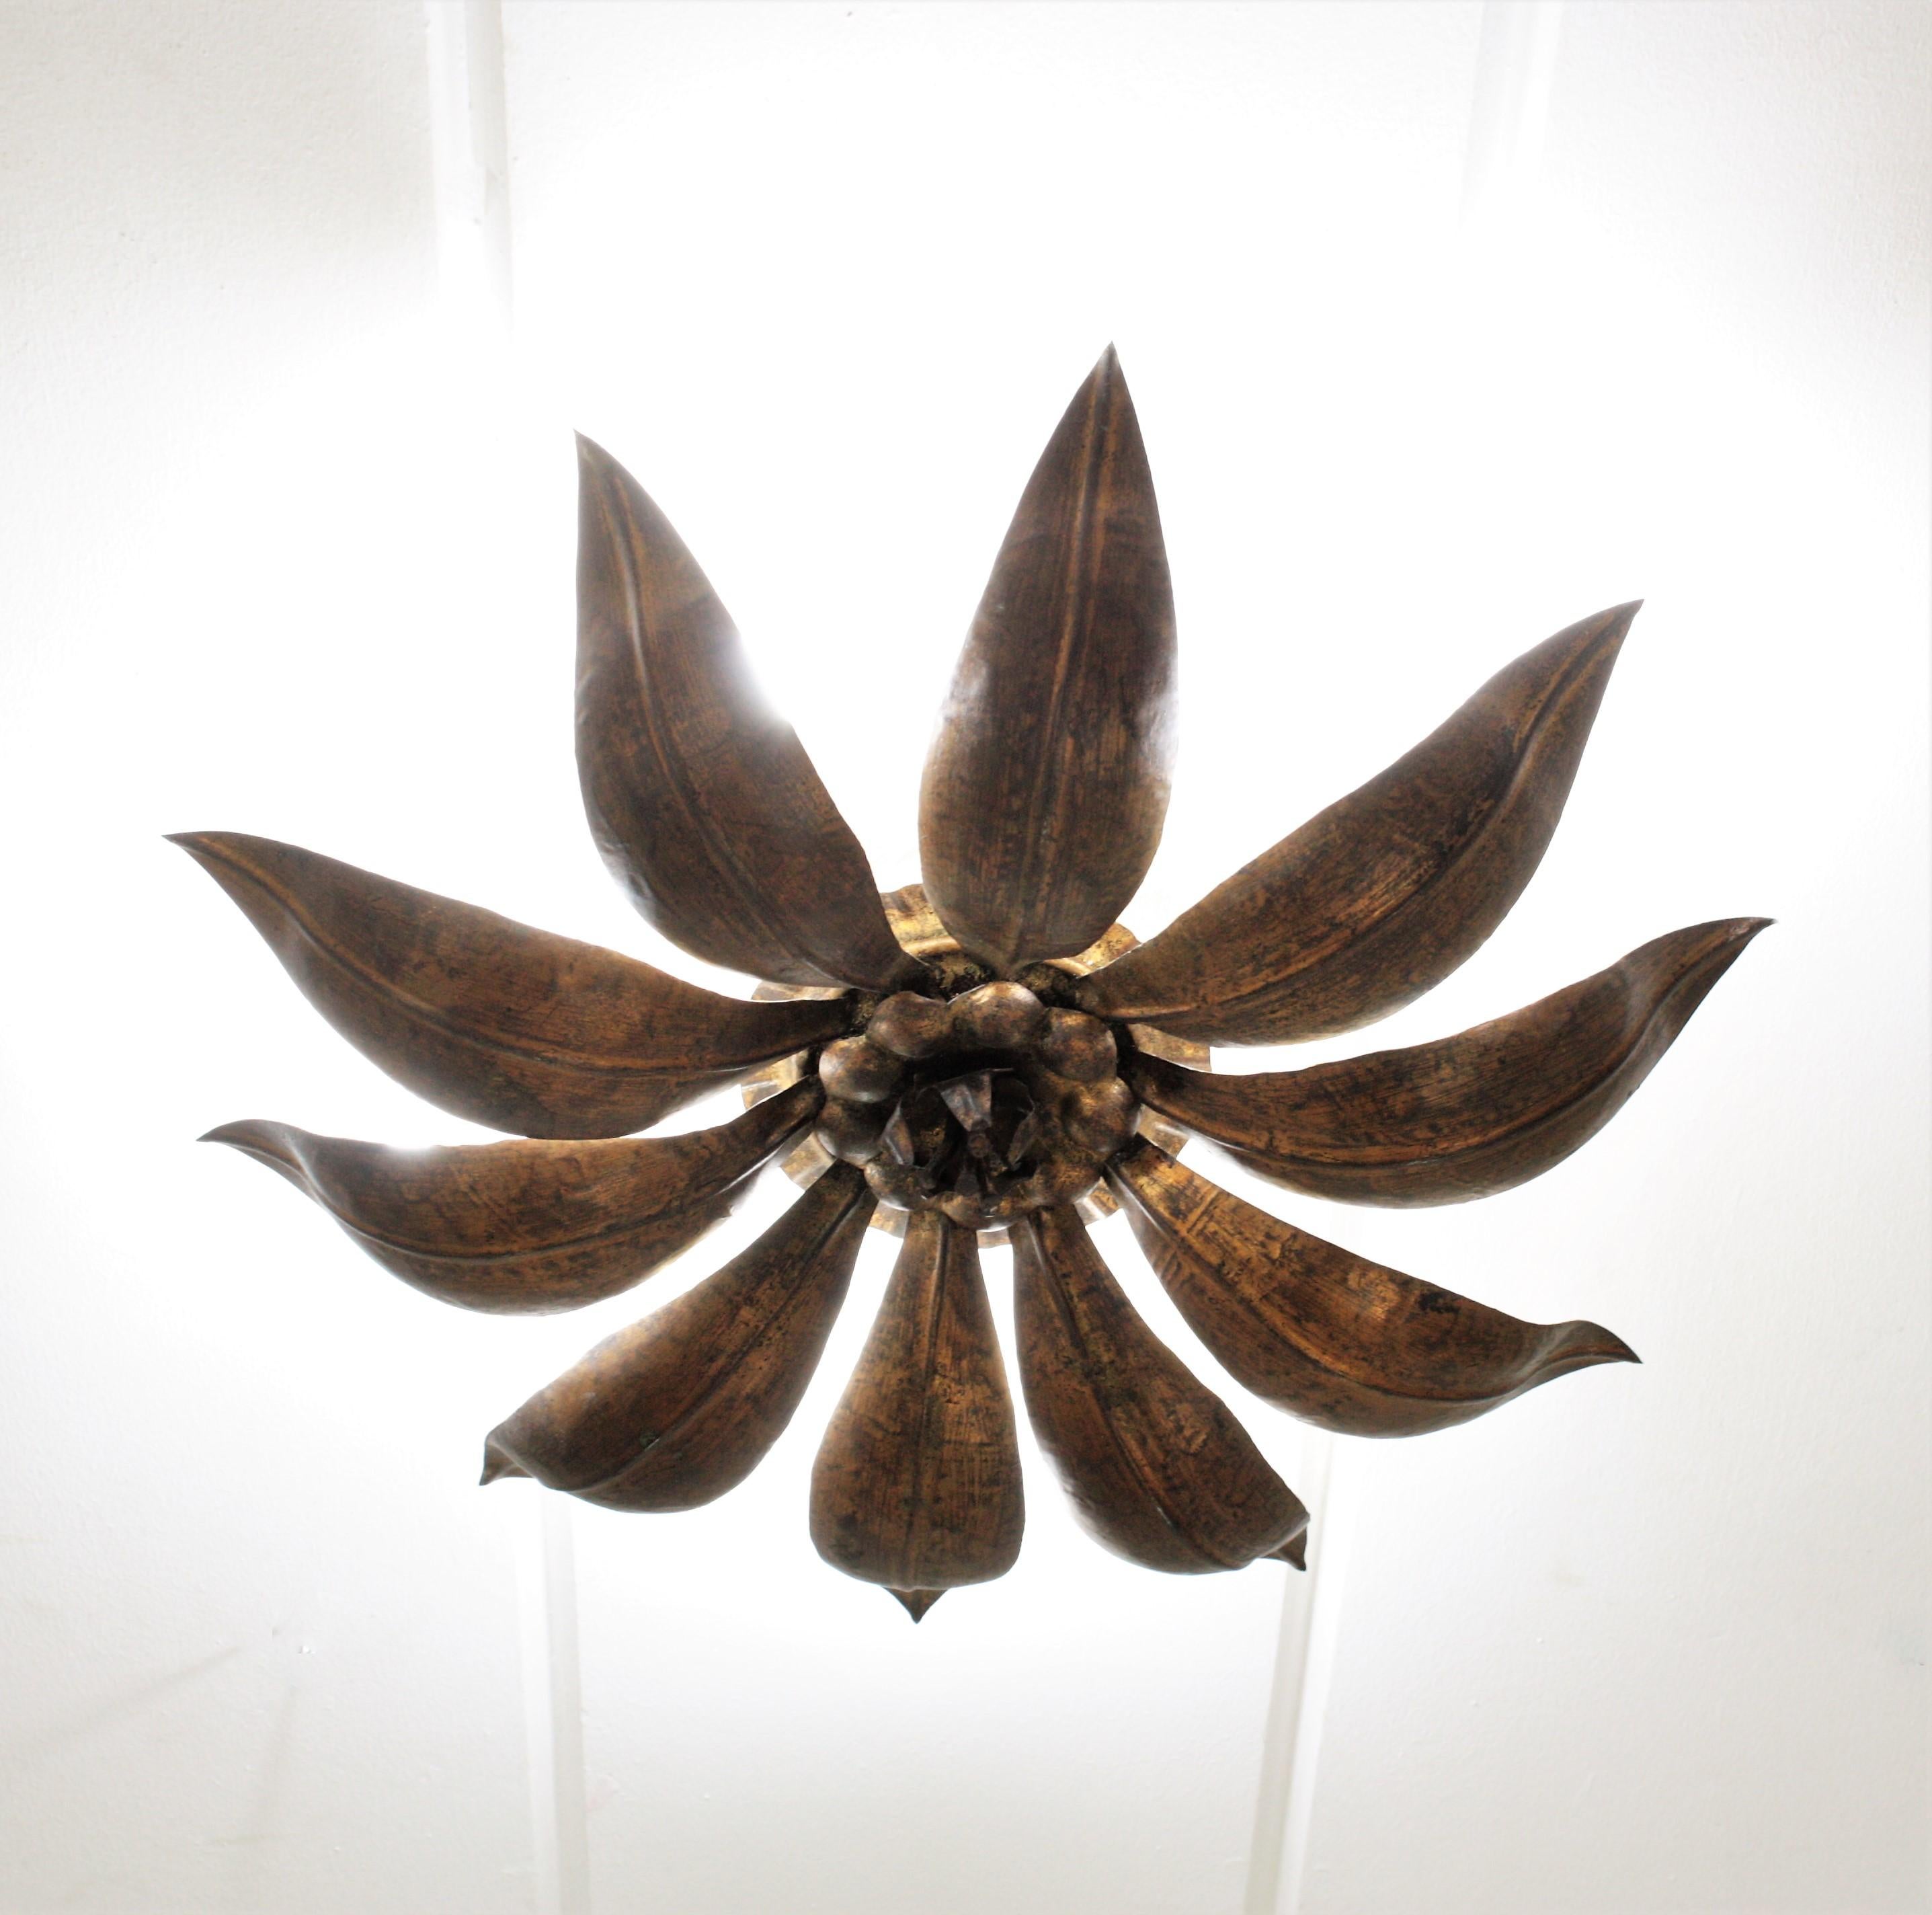 Bronzed French Sunburst Flower Ceiling Light Fixture in Bronze Gilt Iron, 1940s For Sale